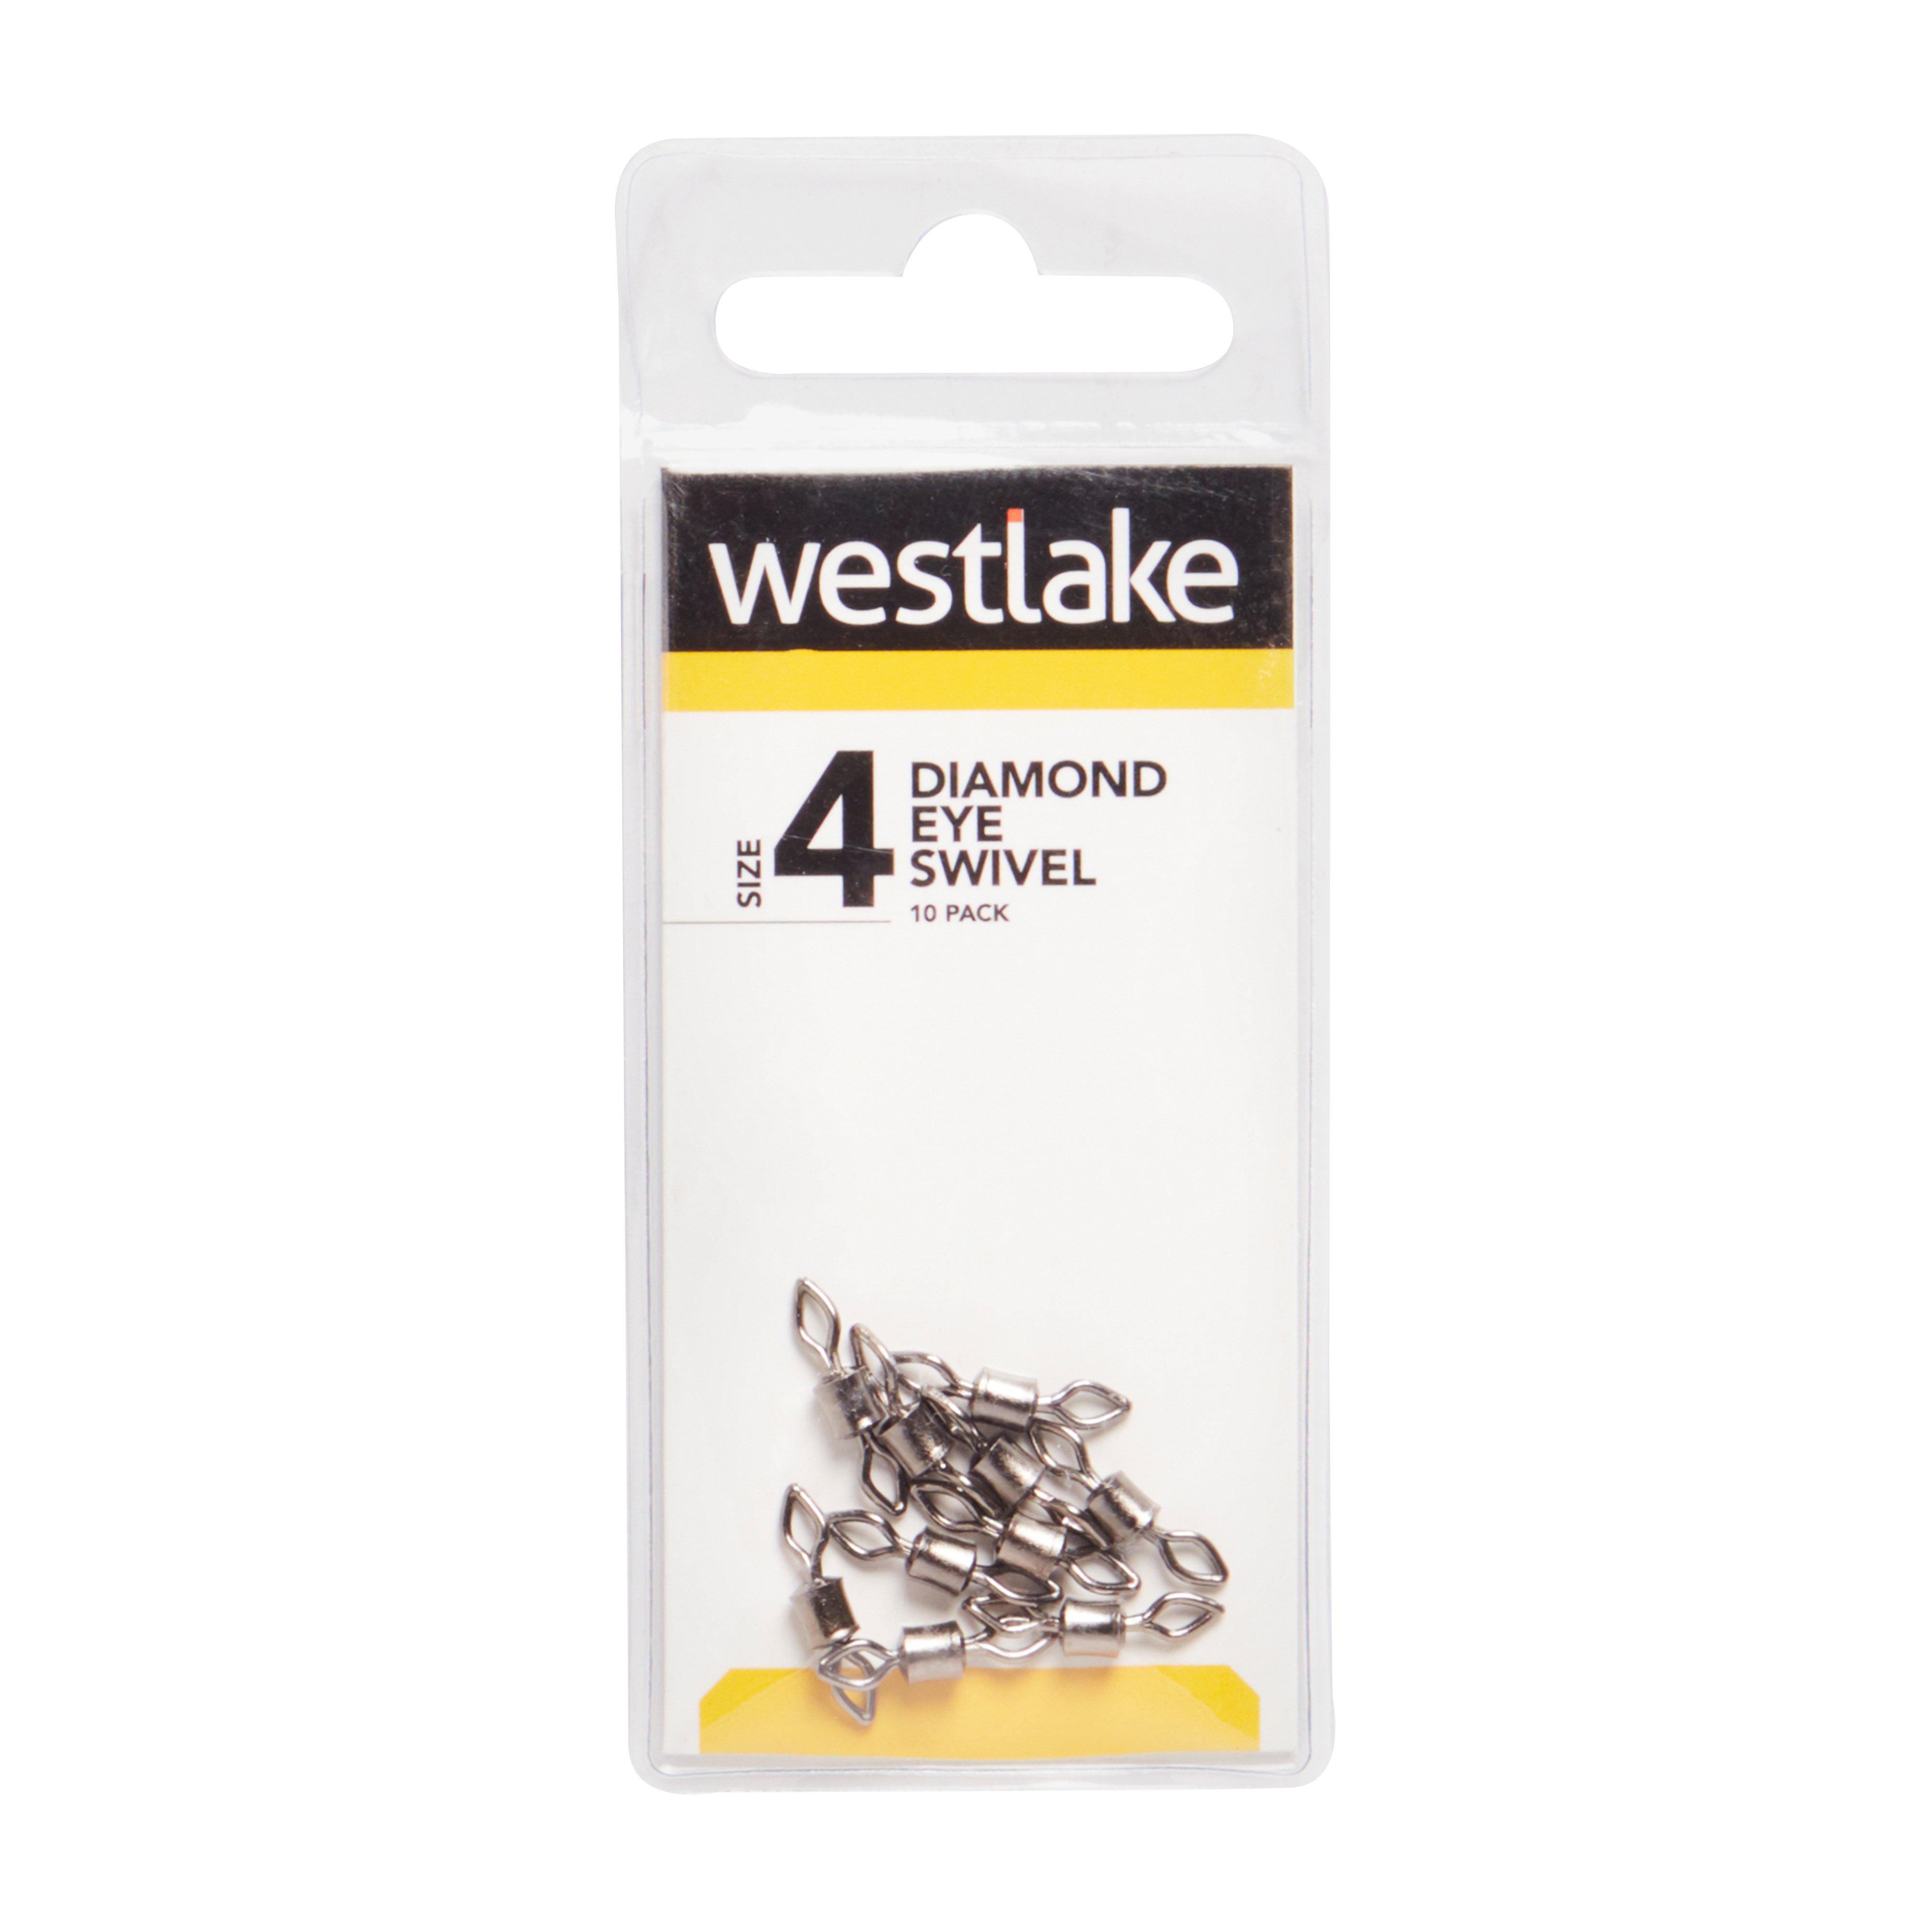 Westlake Diamond Eye Swivel Size 6 22Kg Review